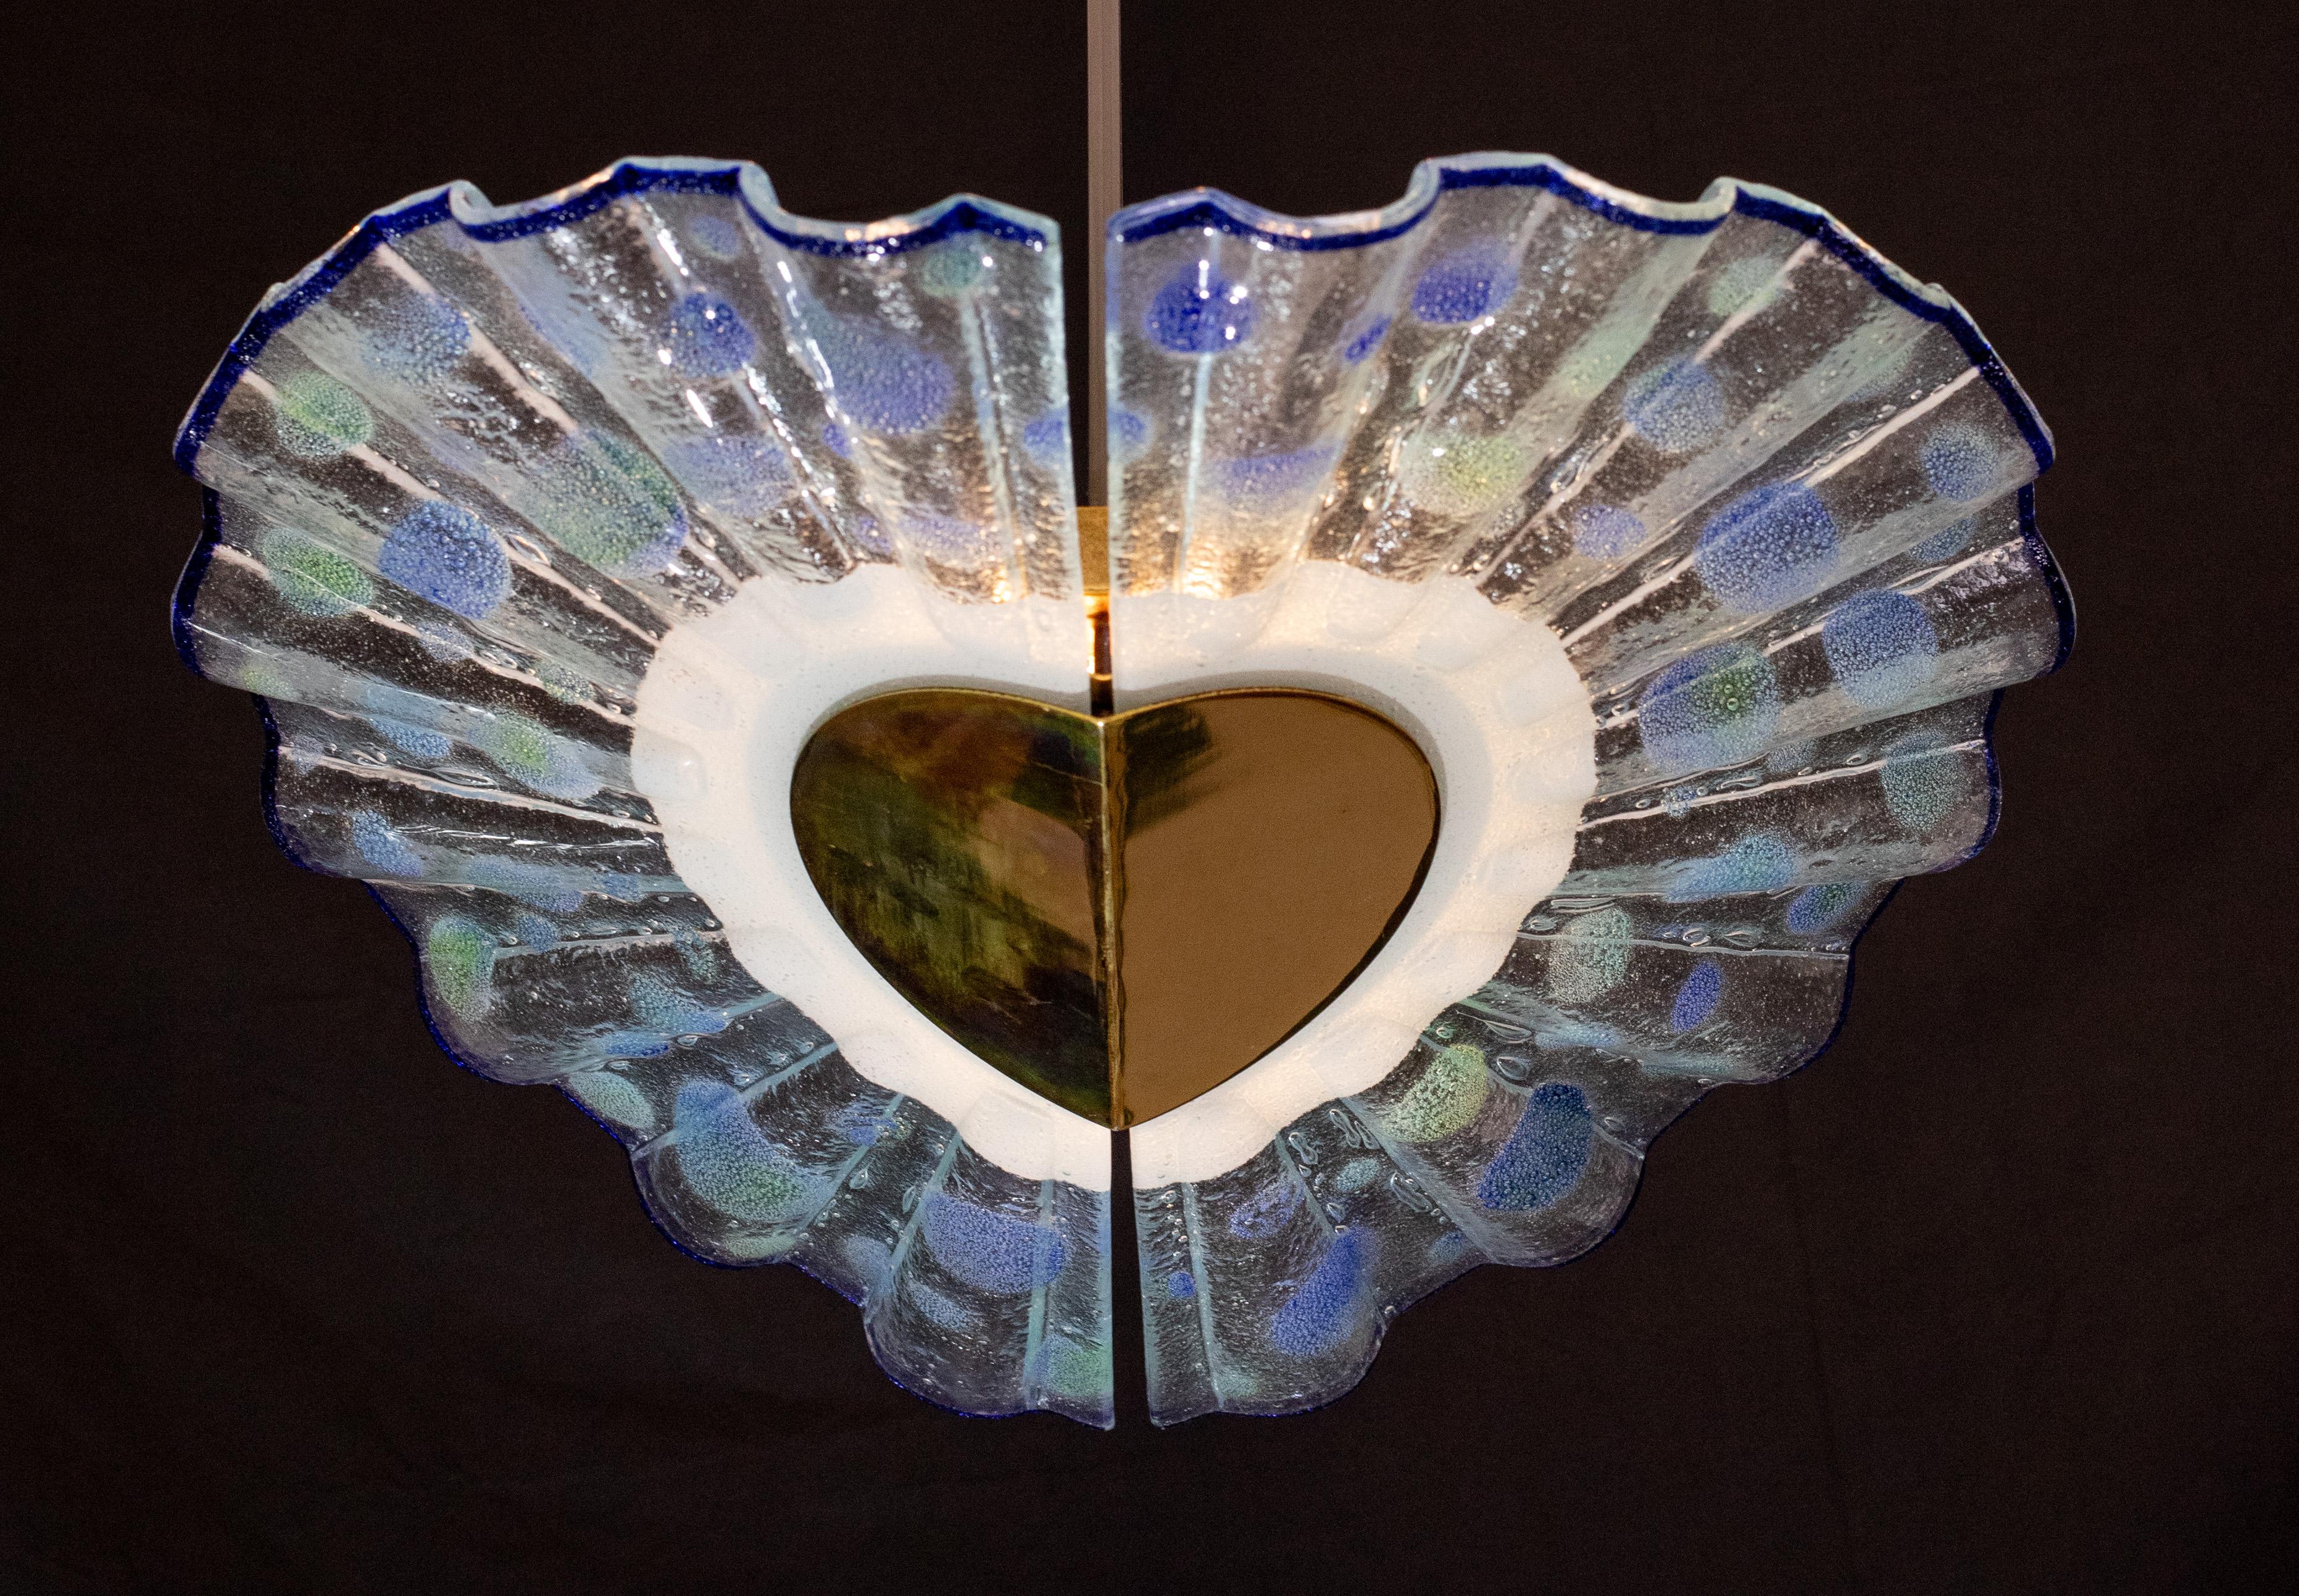 Wunderschöner Kronleuchter aus Murano-Glas, der aus zwei fächerförmig angeordneten Glasscheiben besteht.

Höhe: 90 Zentimeter
Durchmesser: 58 Zentimeter

Einige Spuren der Zeit auf dem Rahmen, guter Vintage-Zustand